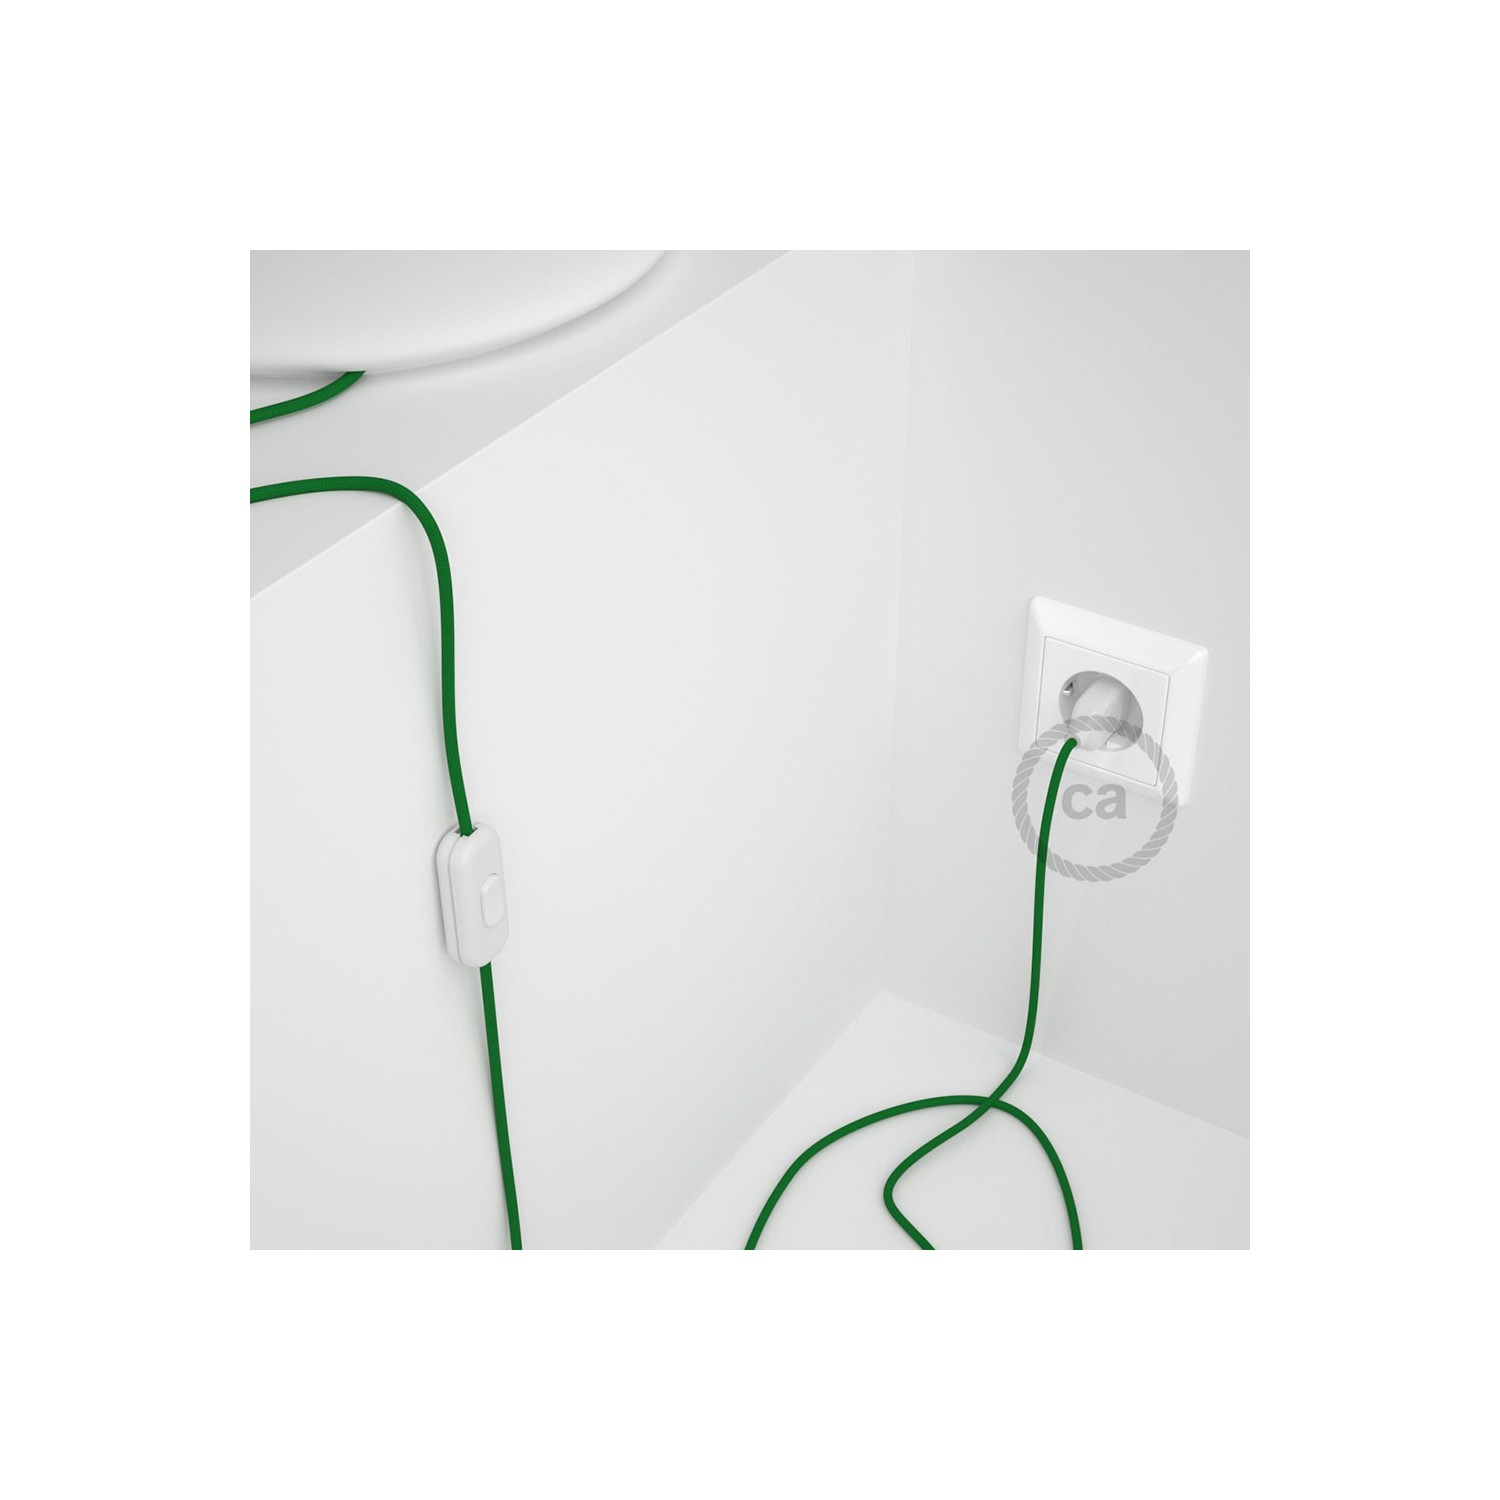 Sladdställ, RM06 Grön Viskos 1,80 m. Välj färg på strömbrytare och kontakt